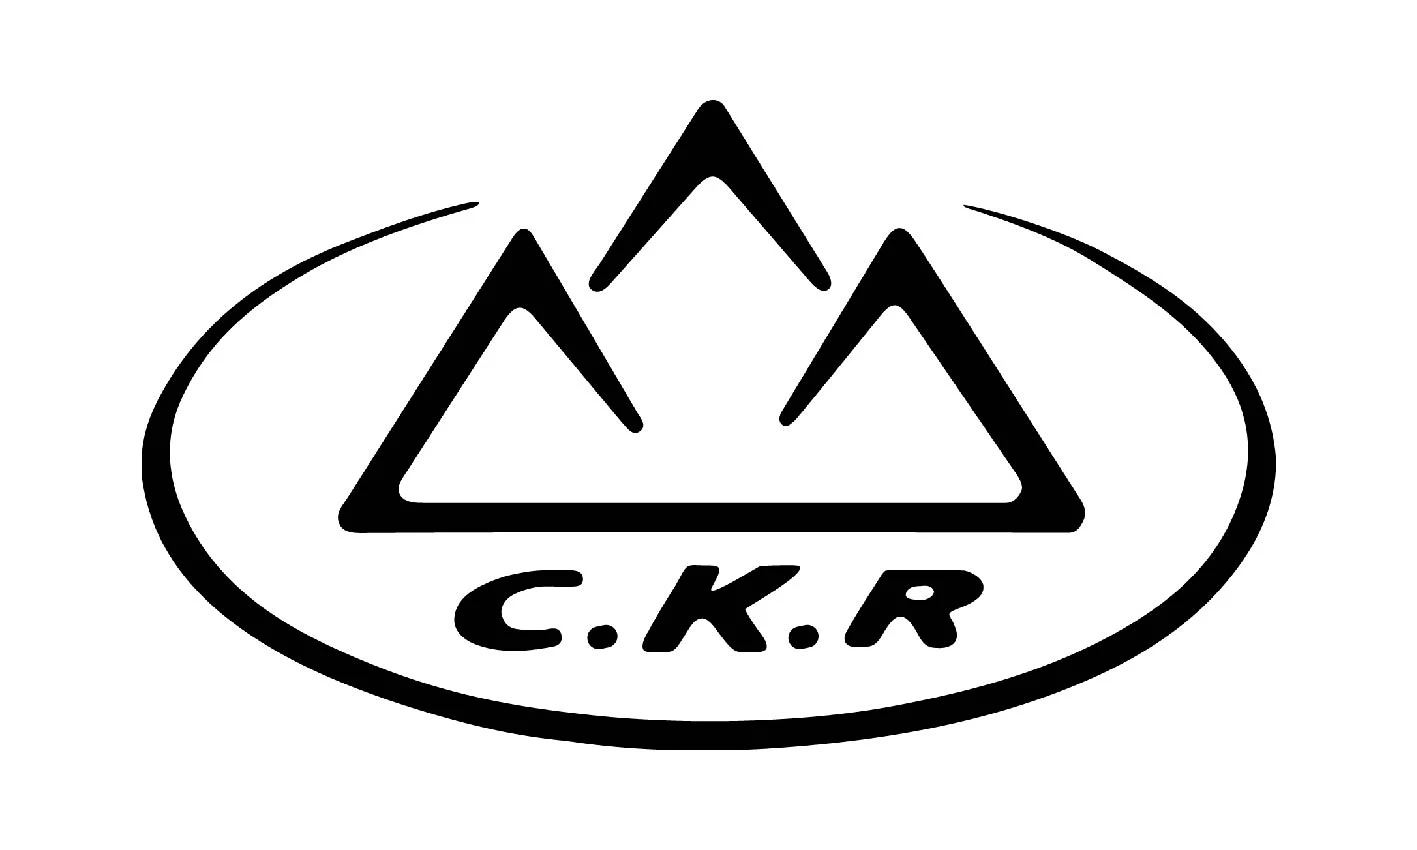 ckr logo 1